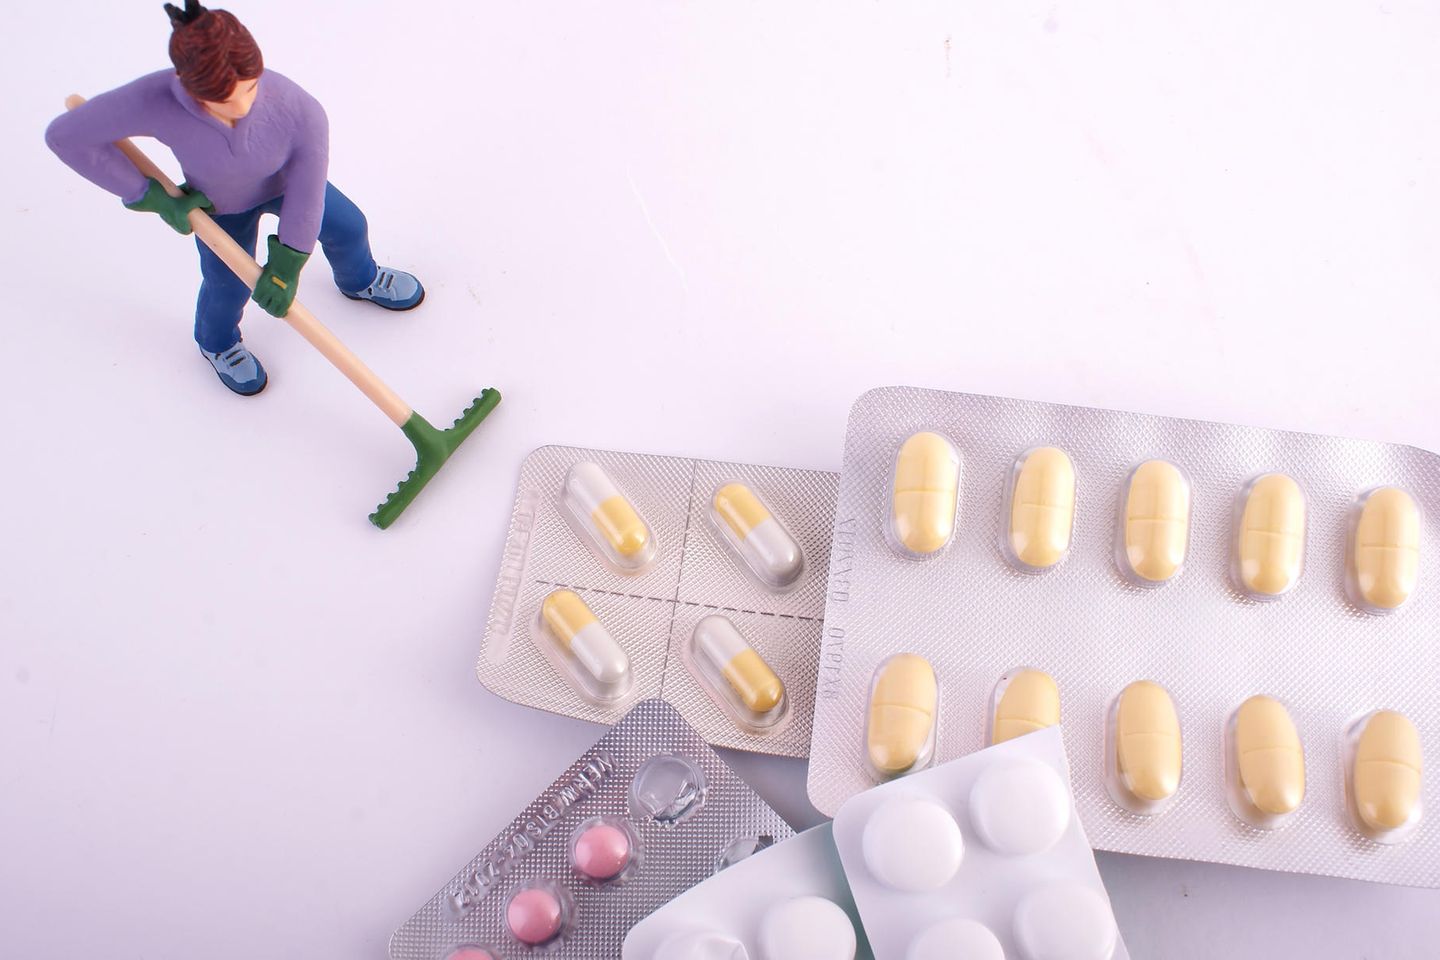 Miniatur-Figur fegt Medikamenten-Blister weg, Symbolbild zum Thema Medikamentenentsorgung